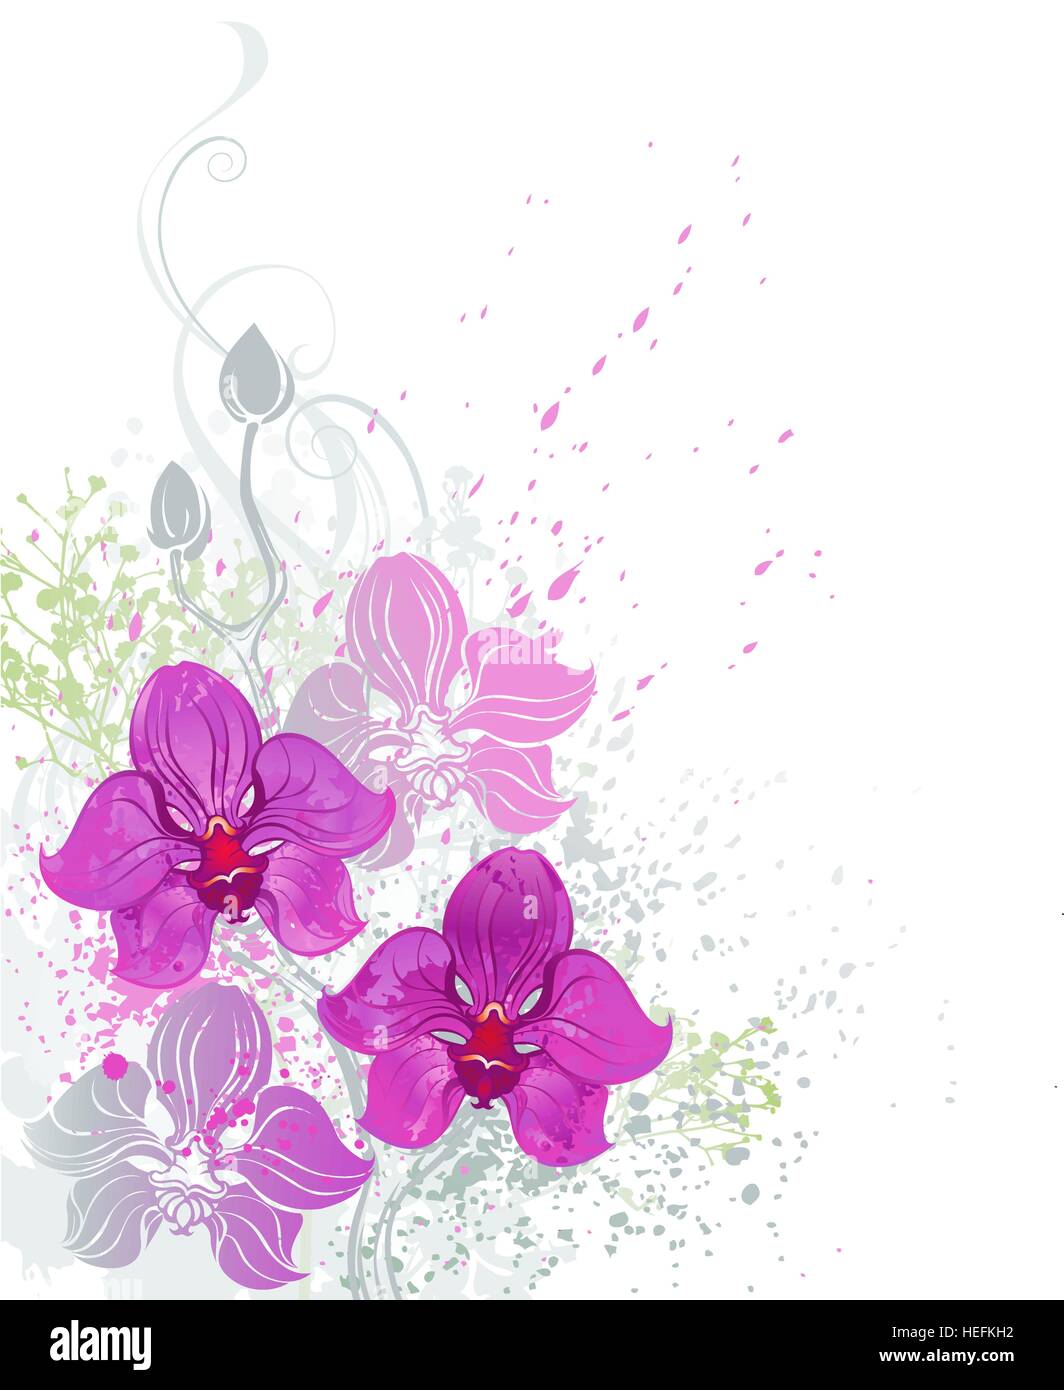 stilisierte schöne rosa Orchidee malte helle Farbe auf weißem Hintergrund Stock Vektor